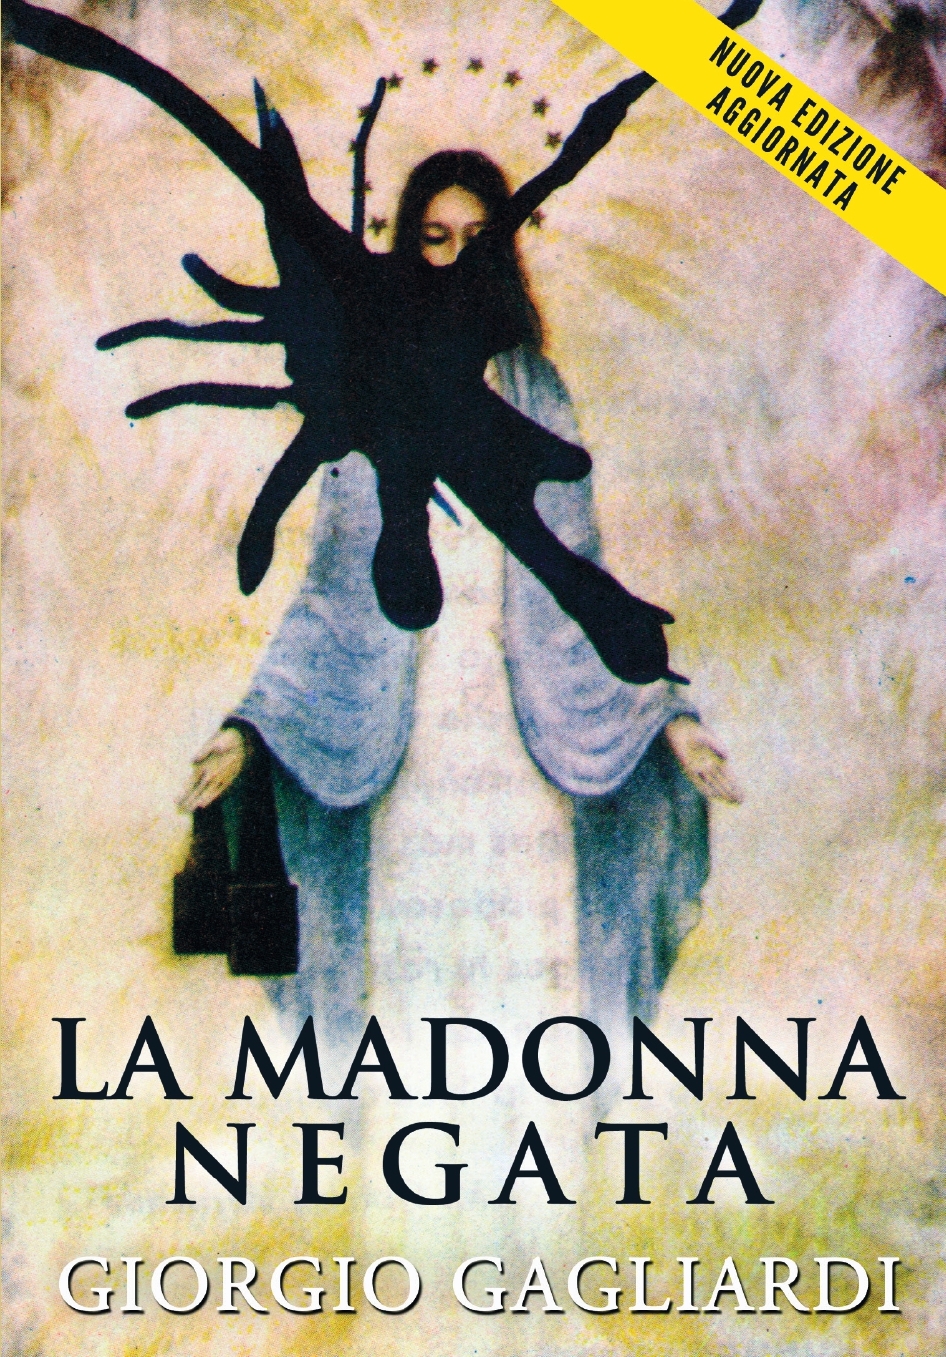 La Madonna negata: la nuova edizione del saggio di Giorgio Gagliardi